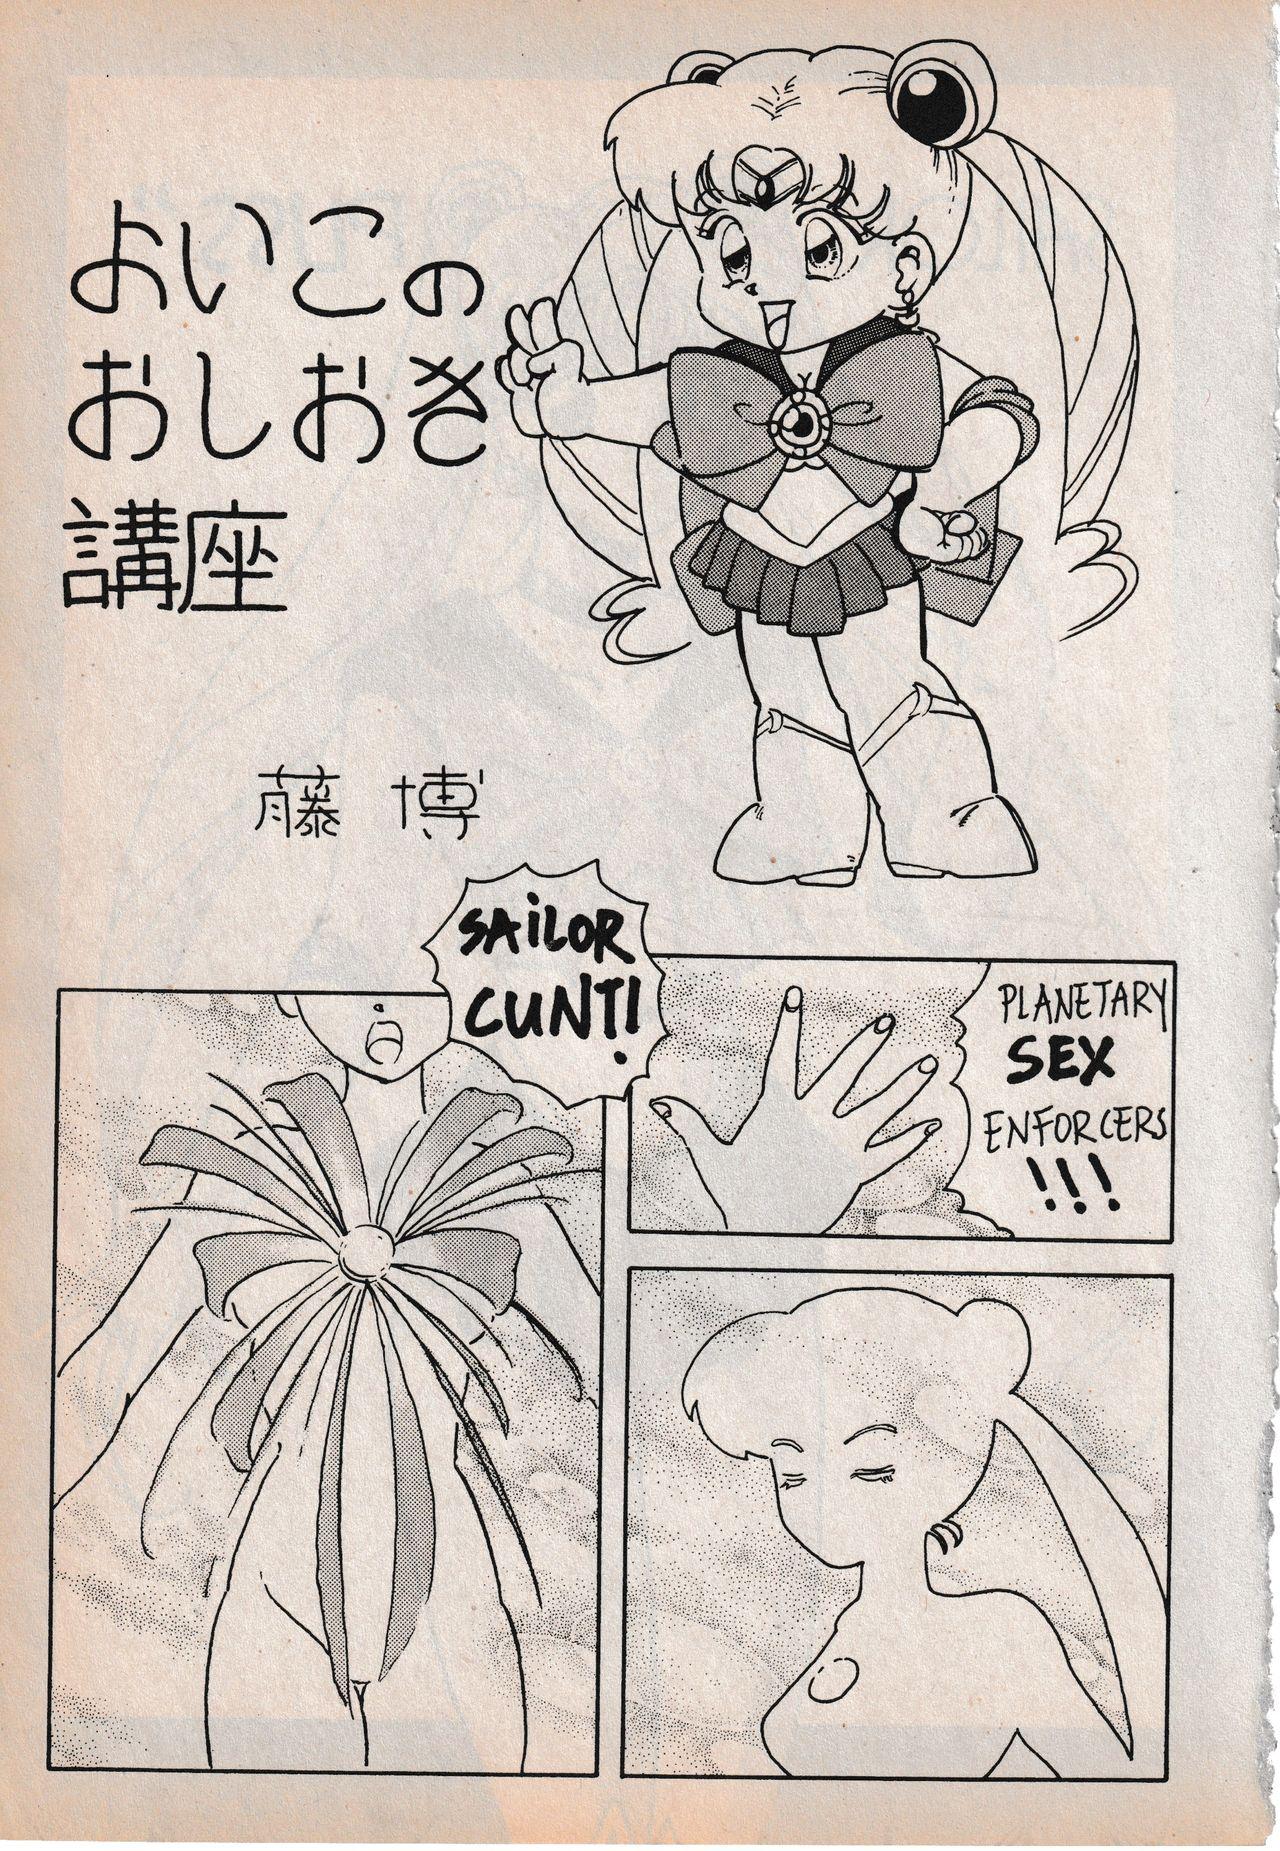 Sailor X vol. 3 - Sailor X Return 62